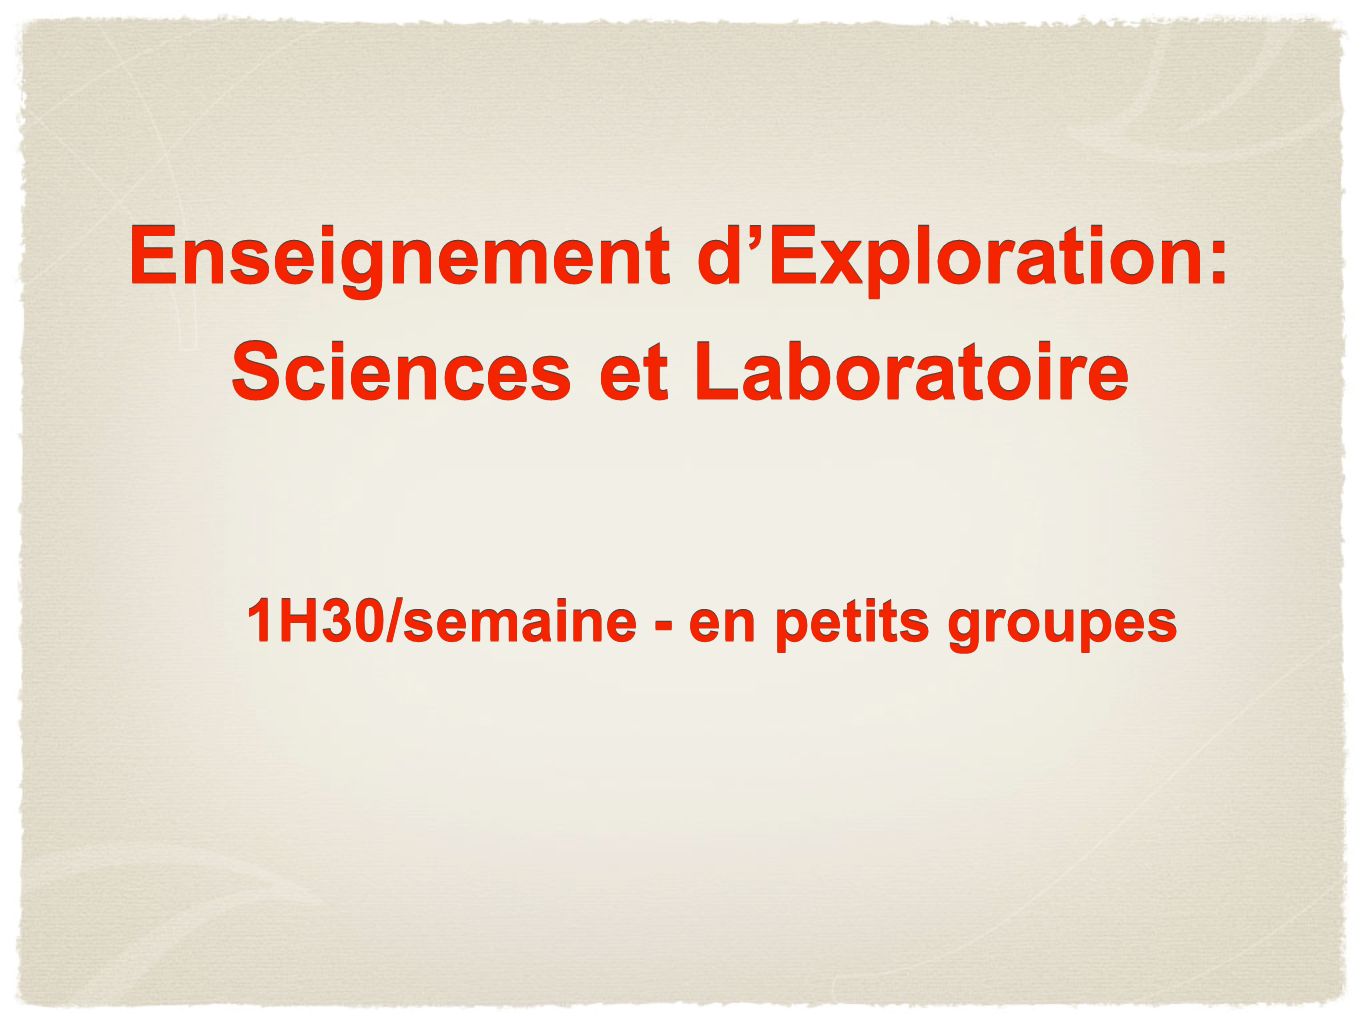 Enseignement d’Exploration: Sciences et Laboratoire